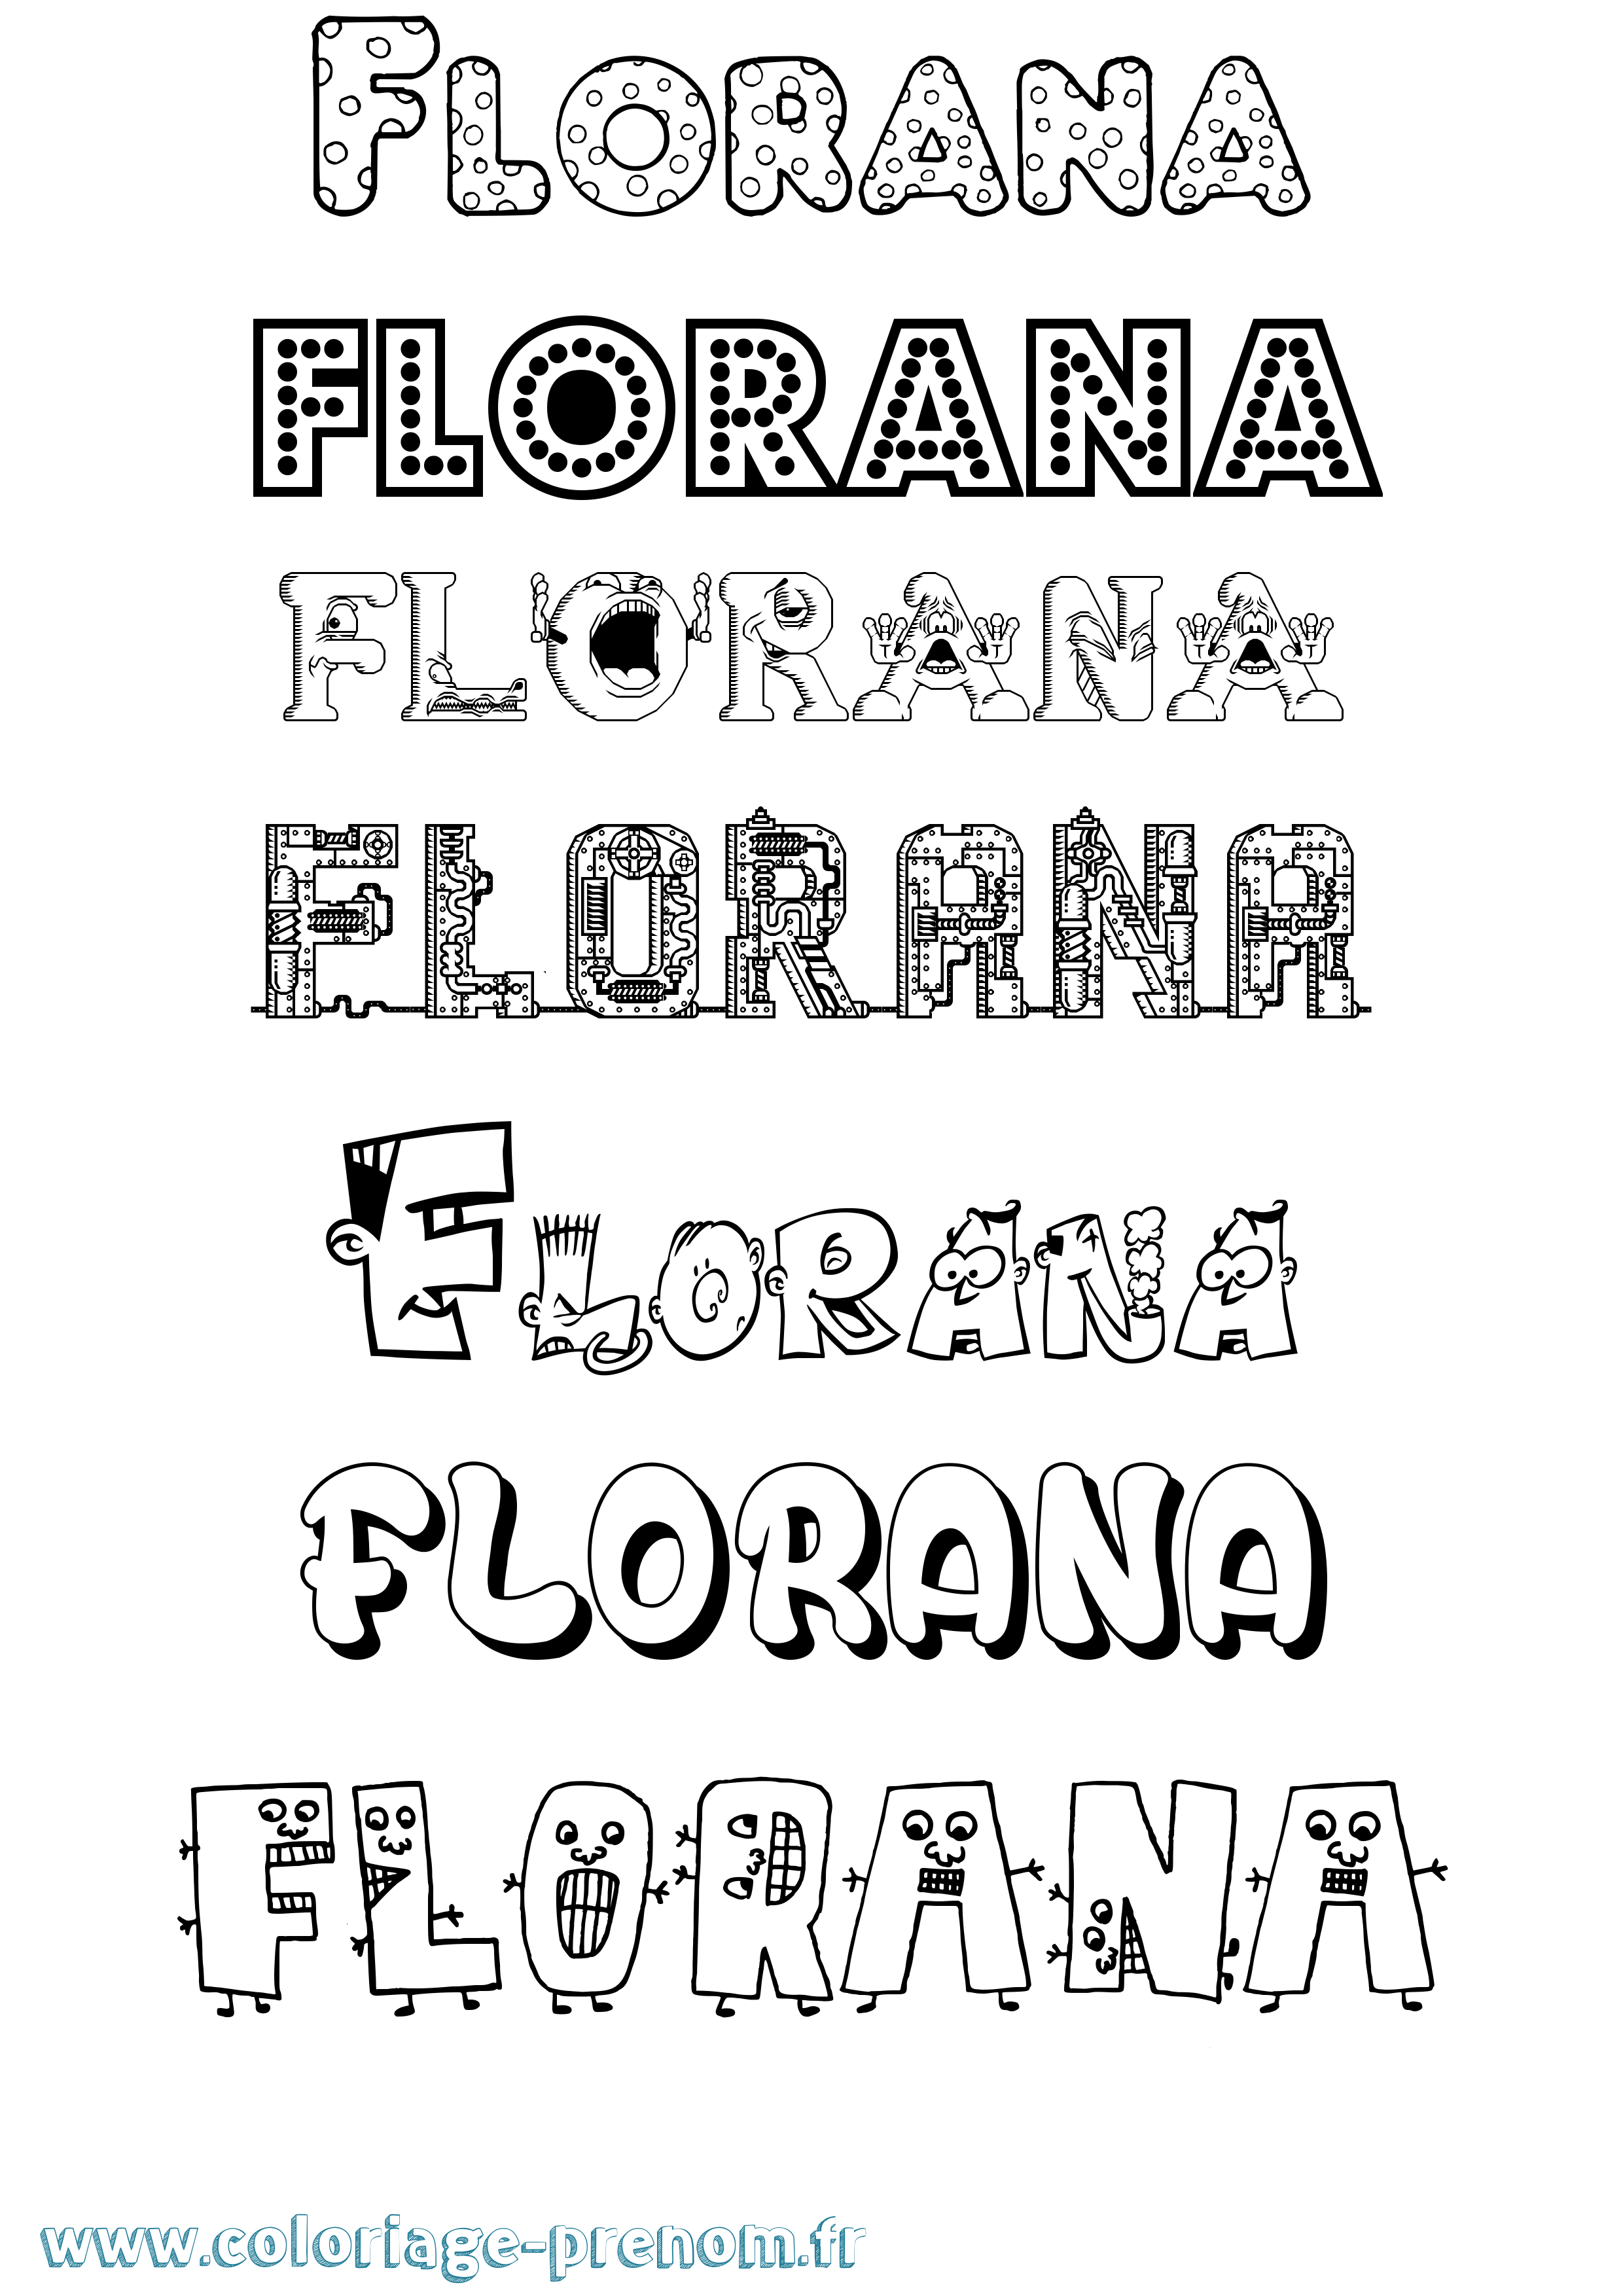 Coloriage prénom Florana Fun